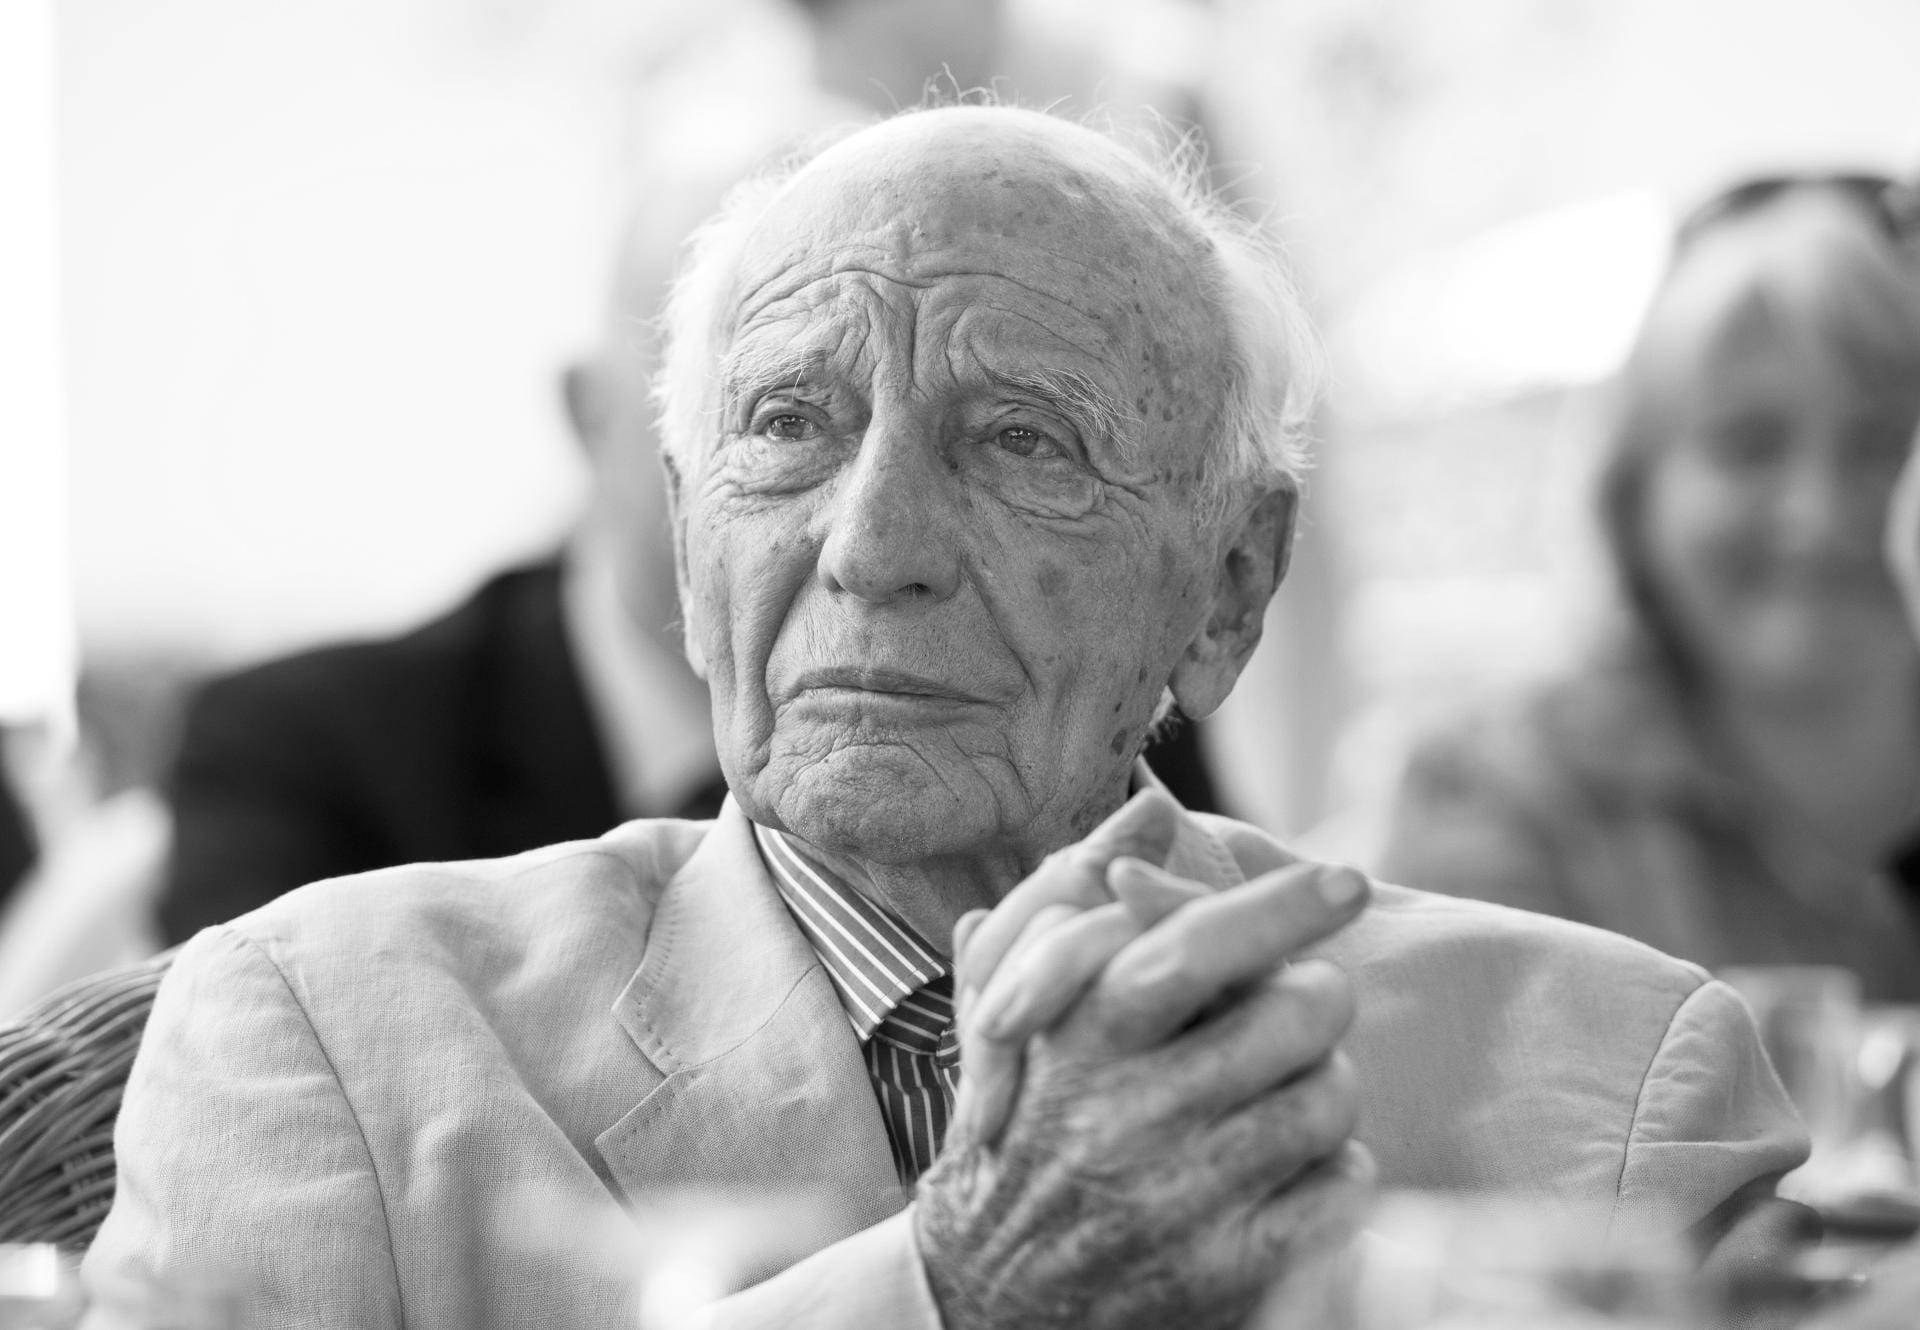 Walter Scheel ist tot. Der Alt-Bundespräsident und frühere Bundesminister starb im Alter von 97 Jahren. In den vergangenen Jahren lebte Scheel in einem Pflegeheim in Bad Krotzingen in der Nähe von Freiburg.